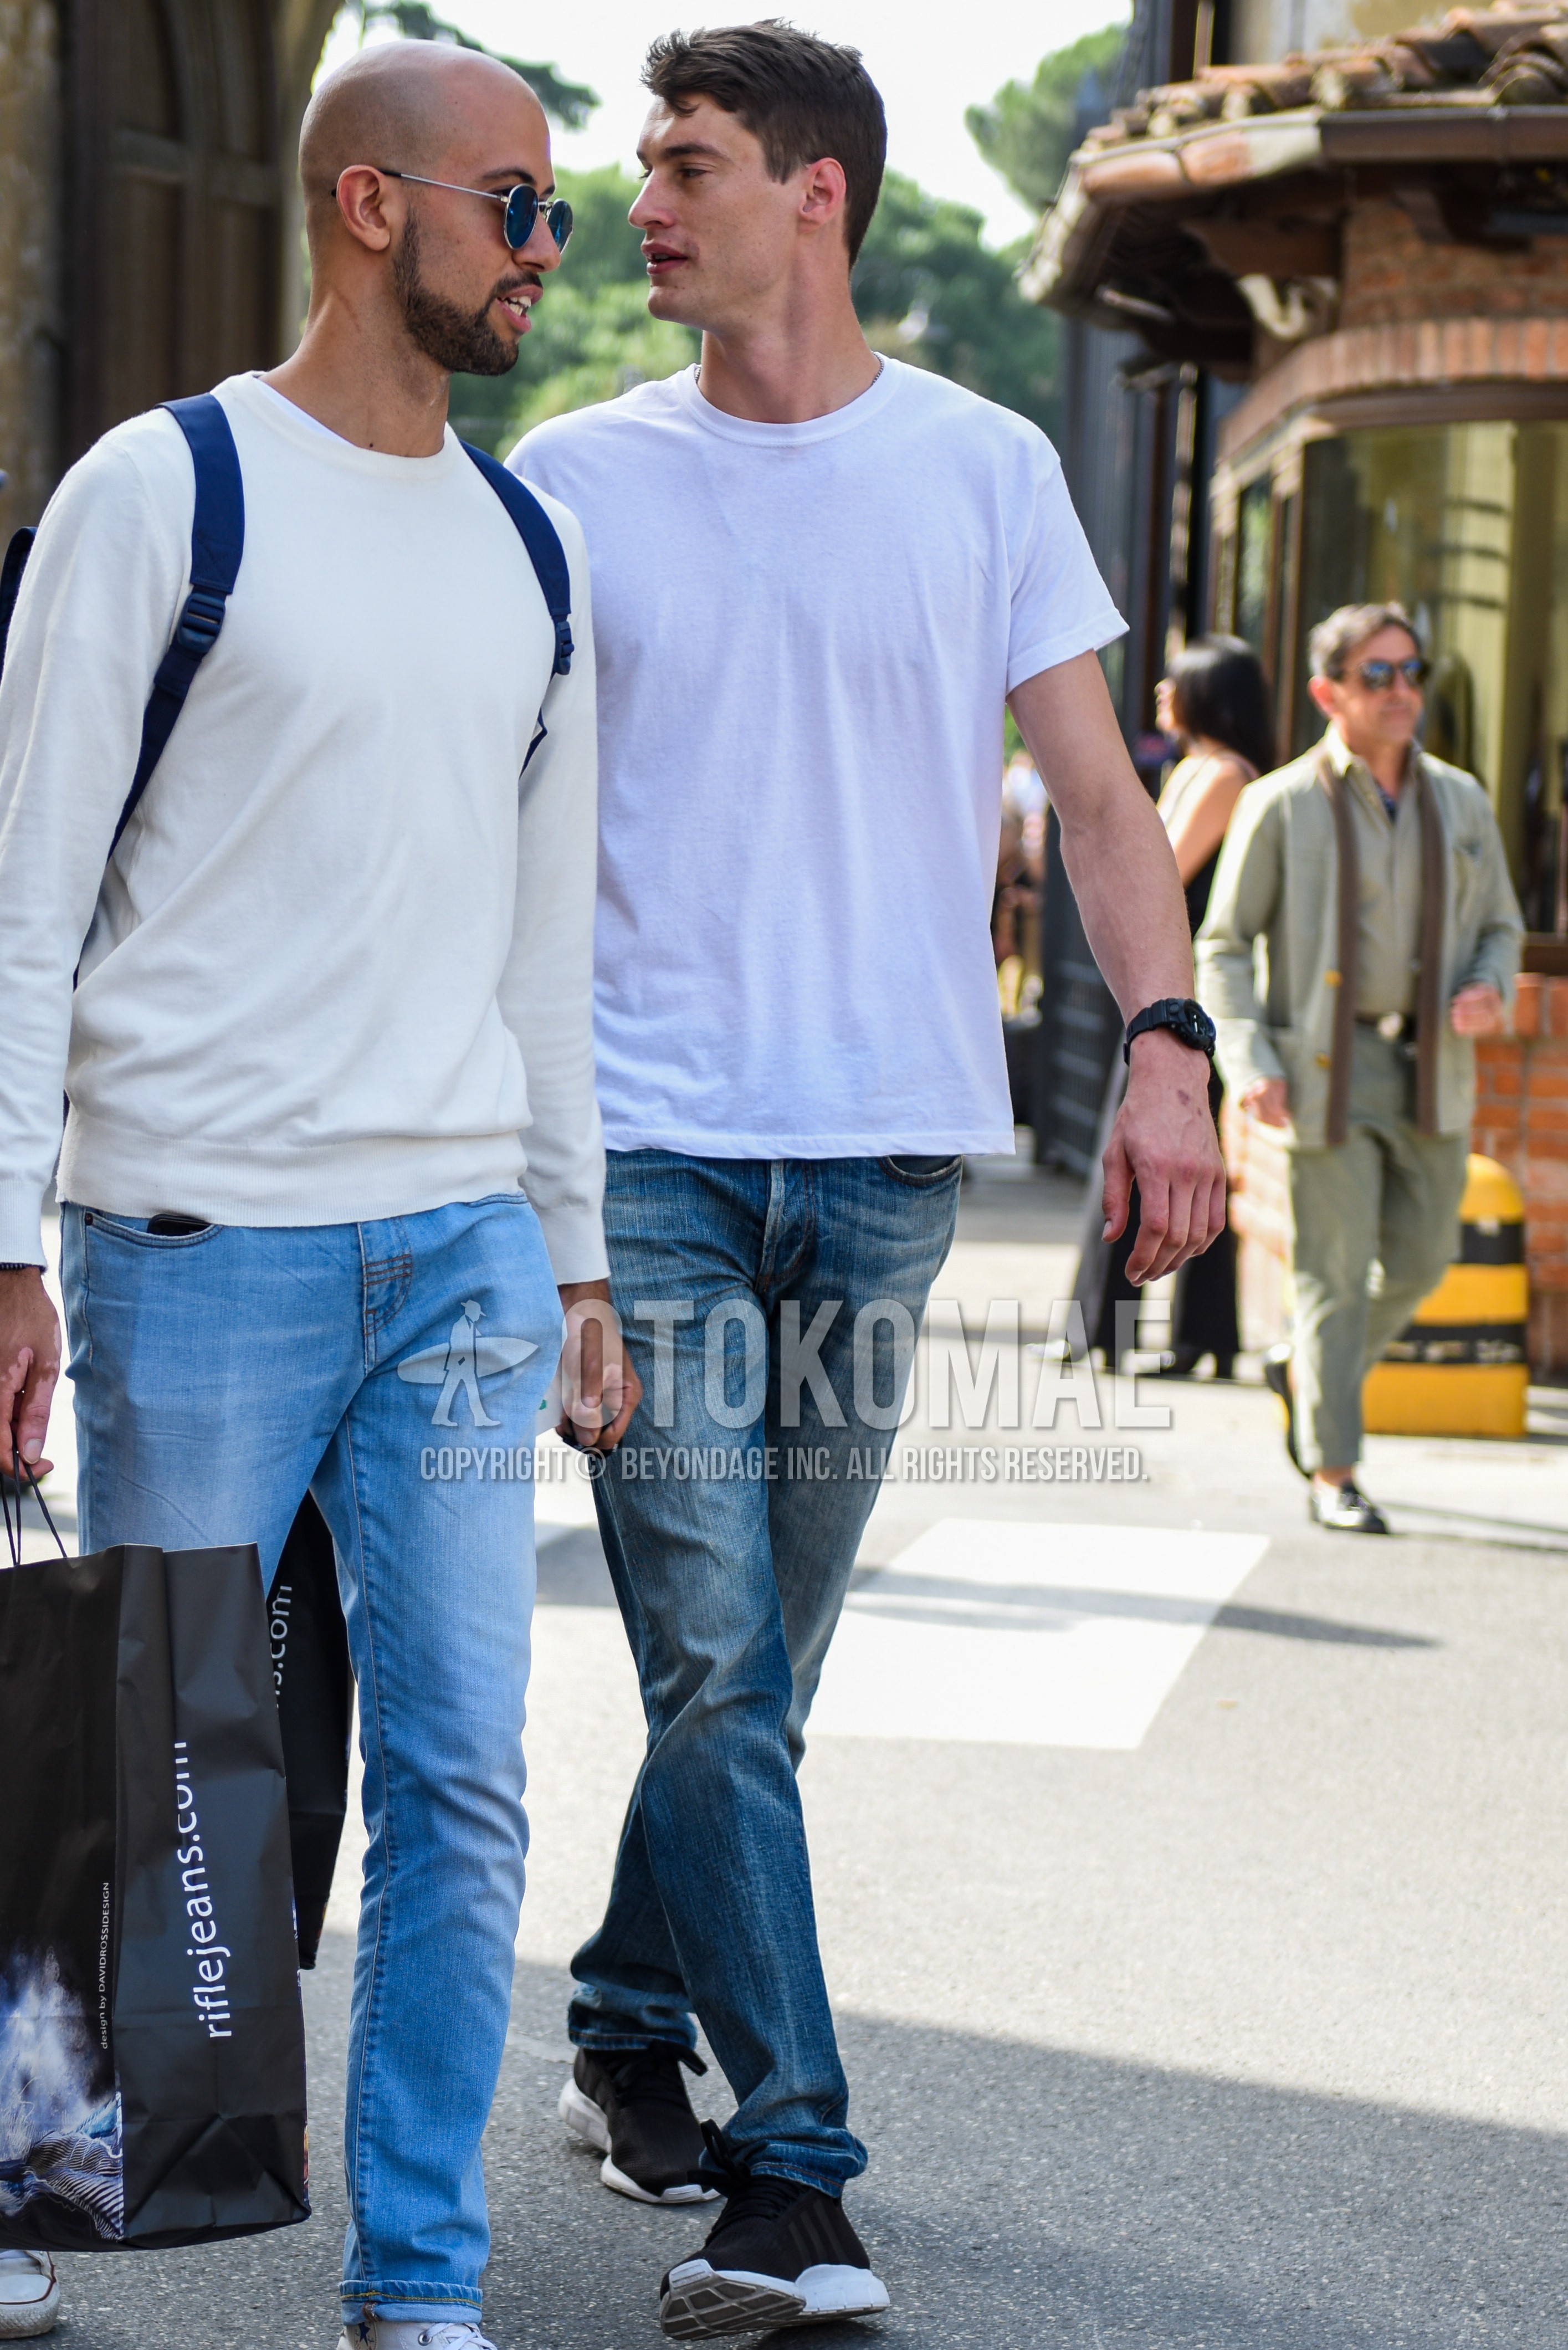 Men's summer outfit with white plain t-shirt, blue plain denim/jeans, black low-cut sneakers.